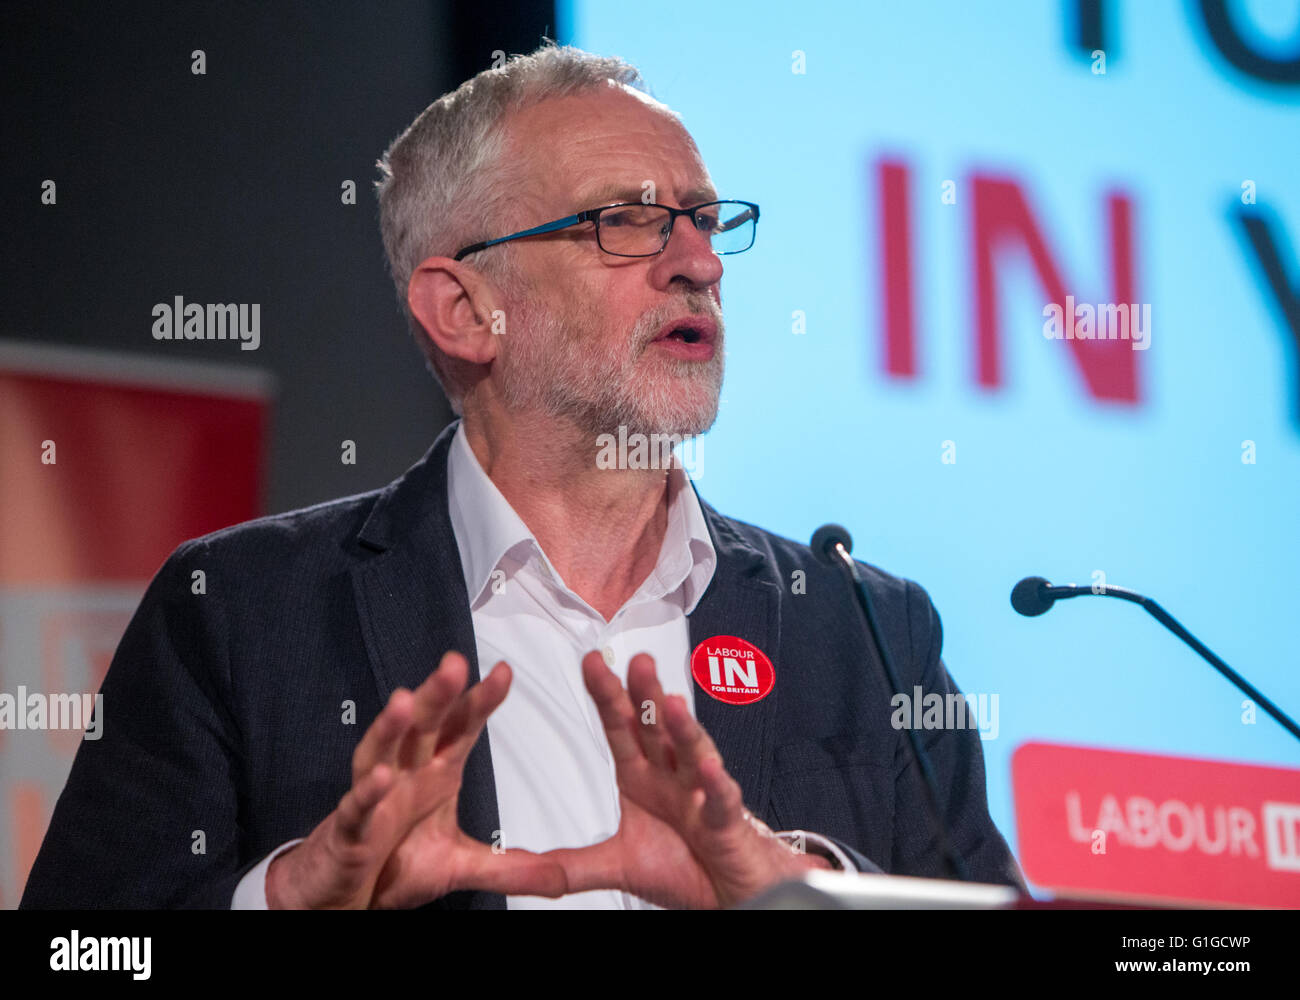 Líder laboral,Jeremy Corbyn,en una votación en la conferencia en Londres Foto de stock